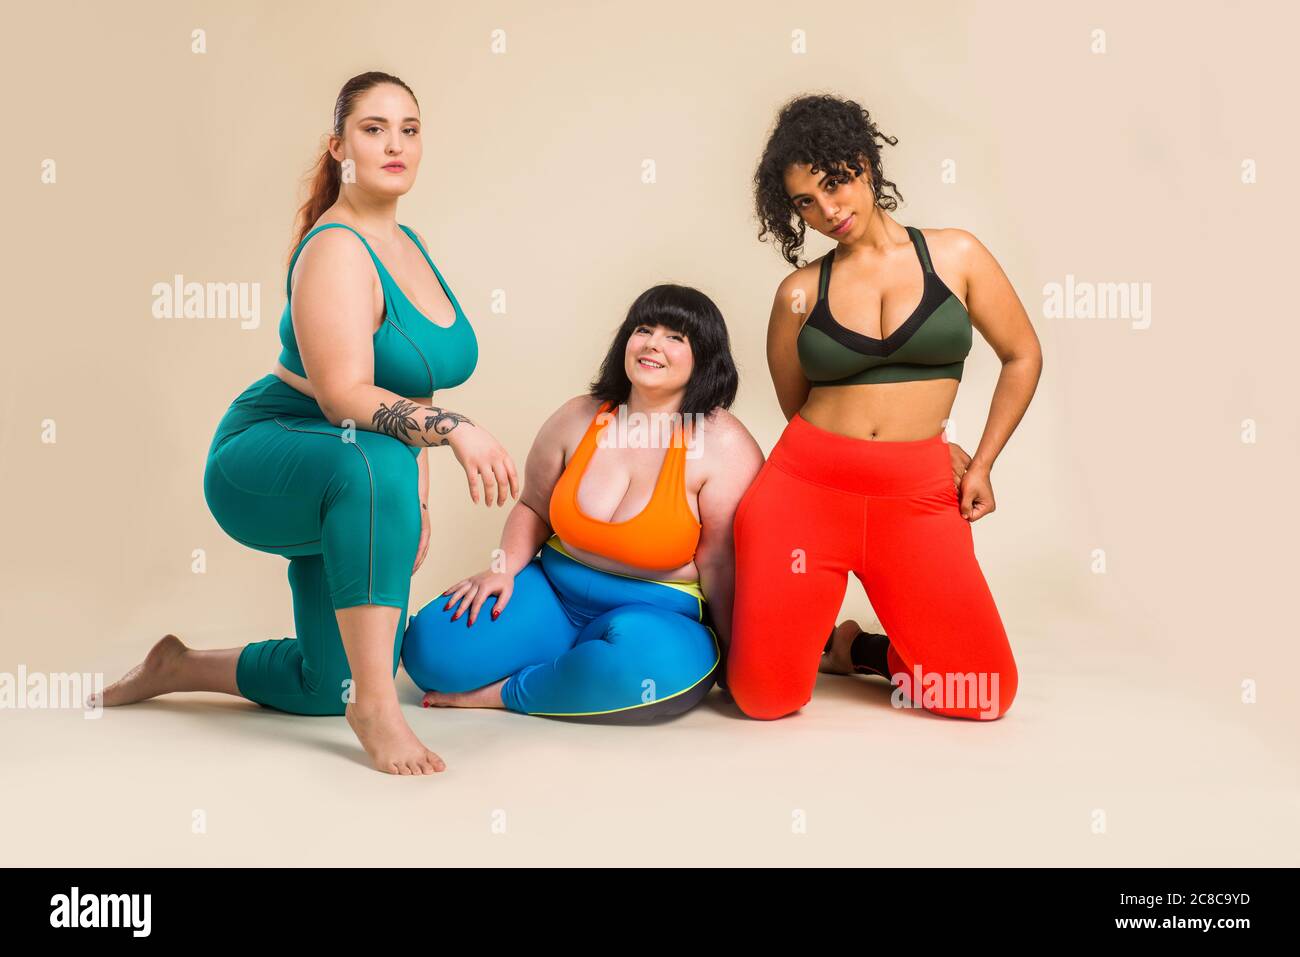 Groupe de 3 femmes surdimensionnées posant en studio - belles filles acceptant l'imperfection du corps, des photos de beauté en studio - concepts sur l'acceptation du corps, dbo Banque D'Images